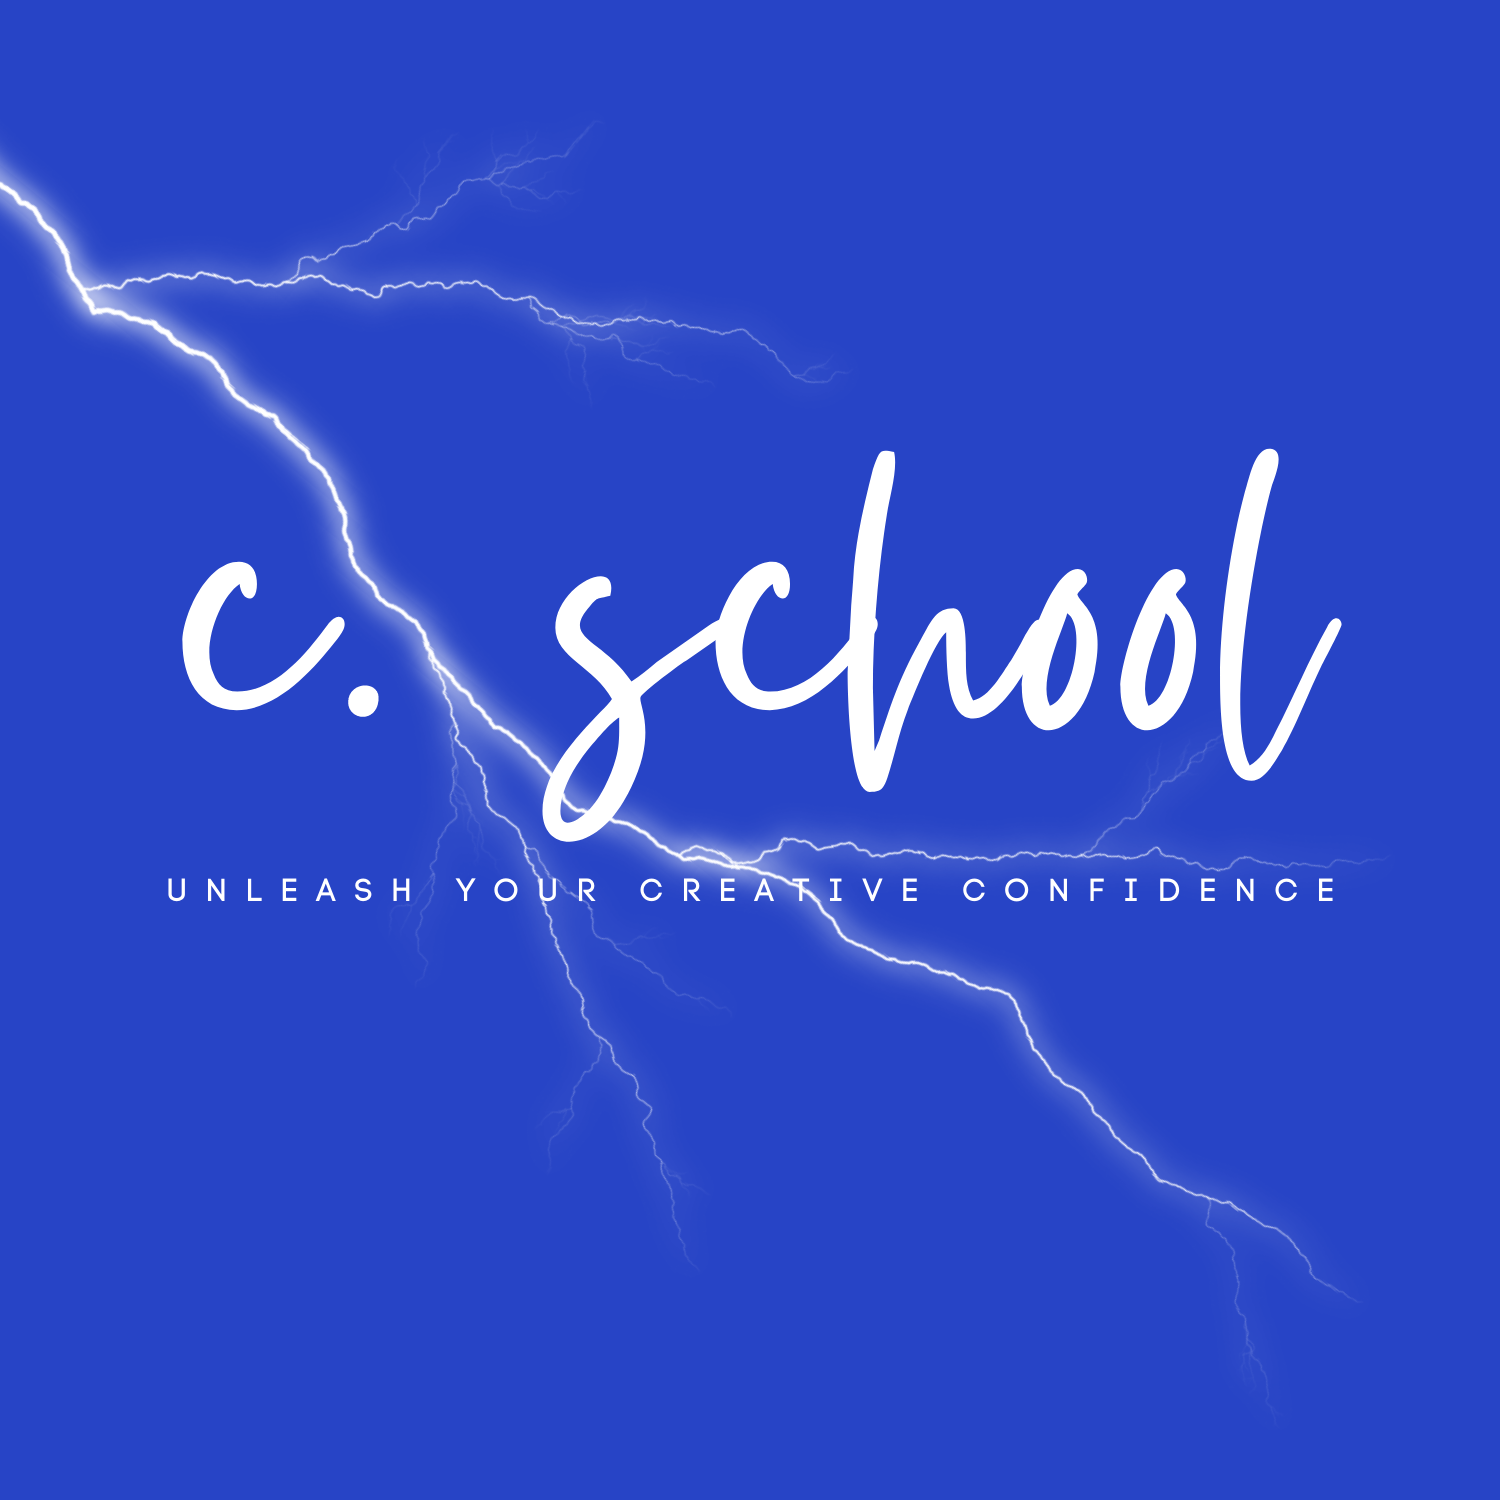 The C.School